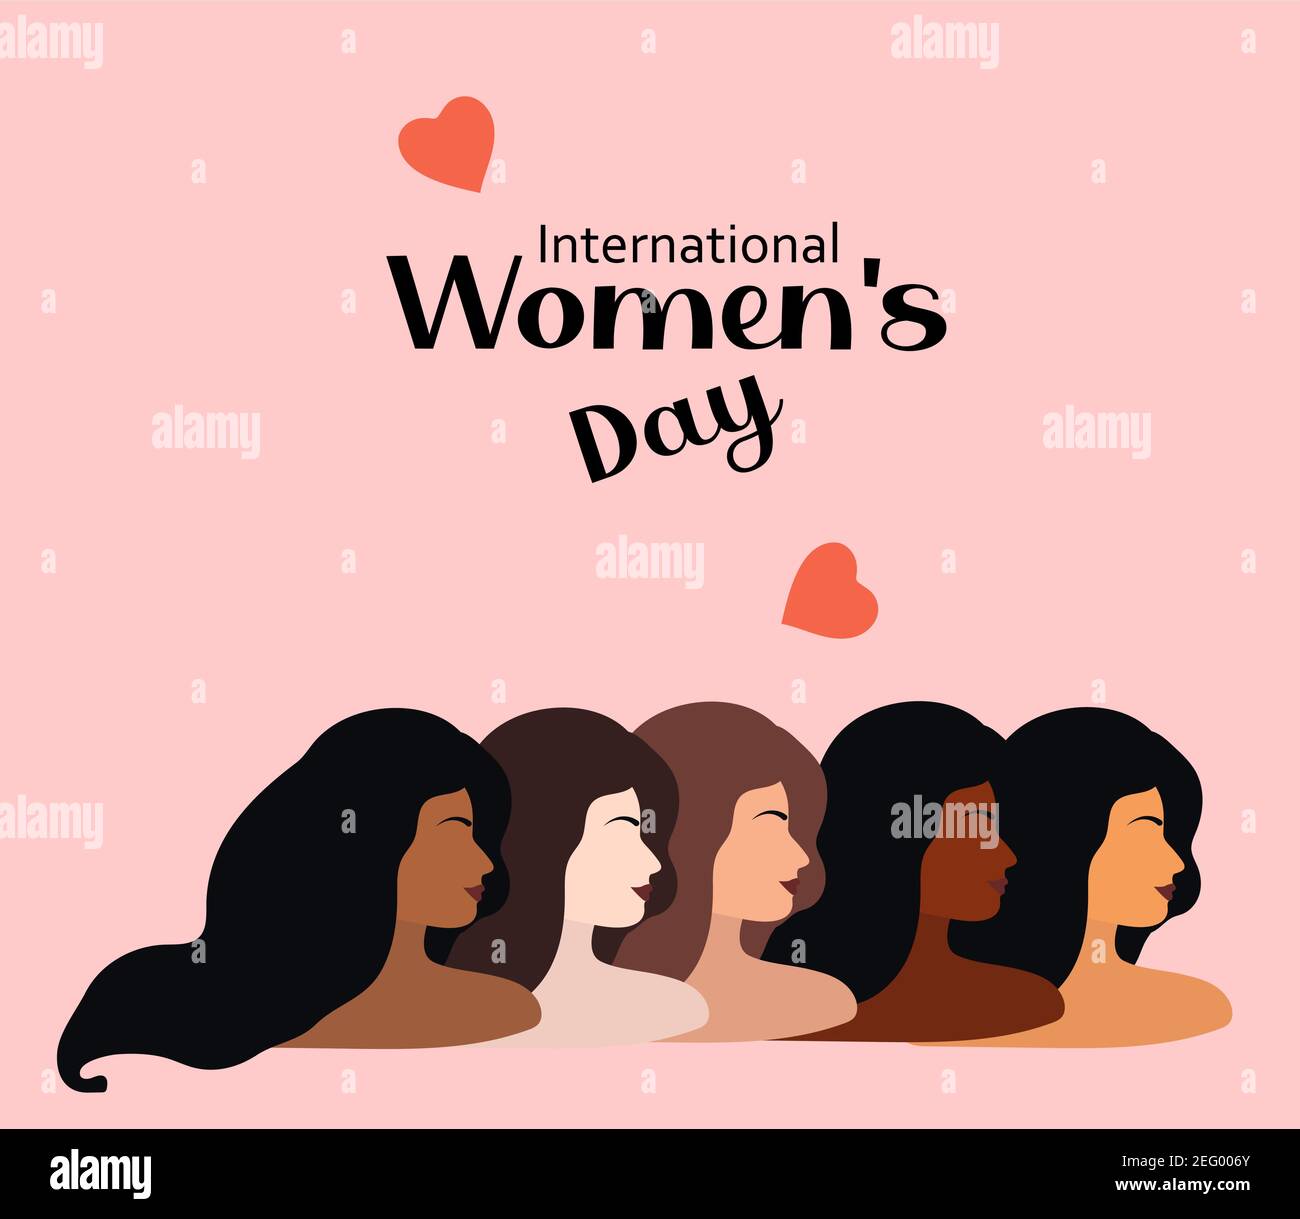 Internationaler Frauentag 8. März. Vektor-Illustration mit Frauen verschiedener Nationalitäten und Kulturen. Kampf für Freiheit, Unabhängigkeit, Gleichheit Stock Vektor